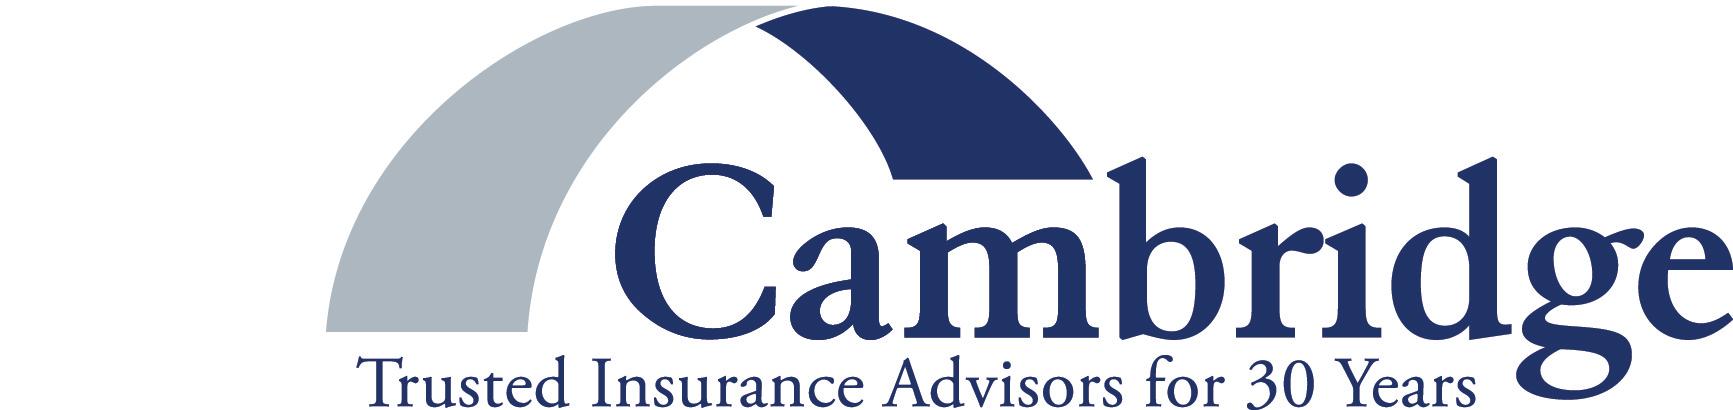 Cambridge Insurance Advisors - Chicago, IL